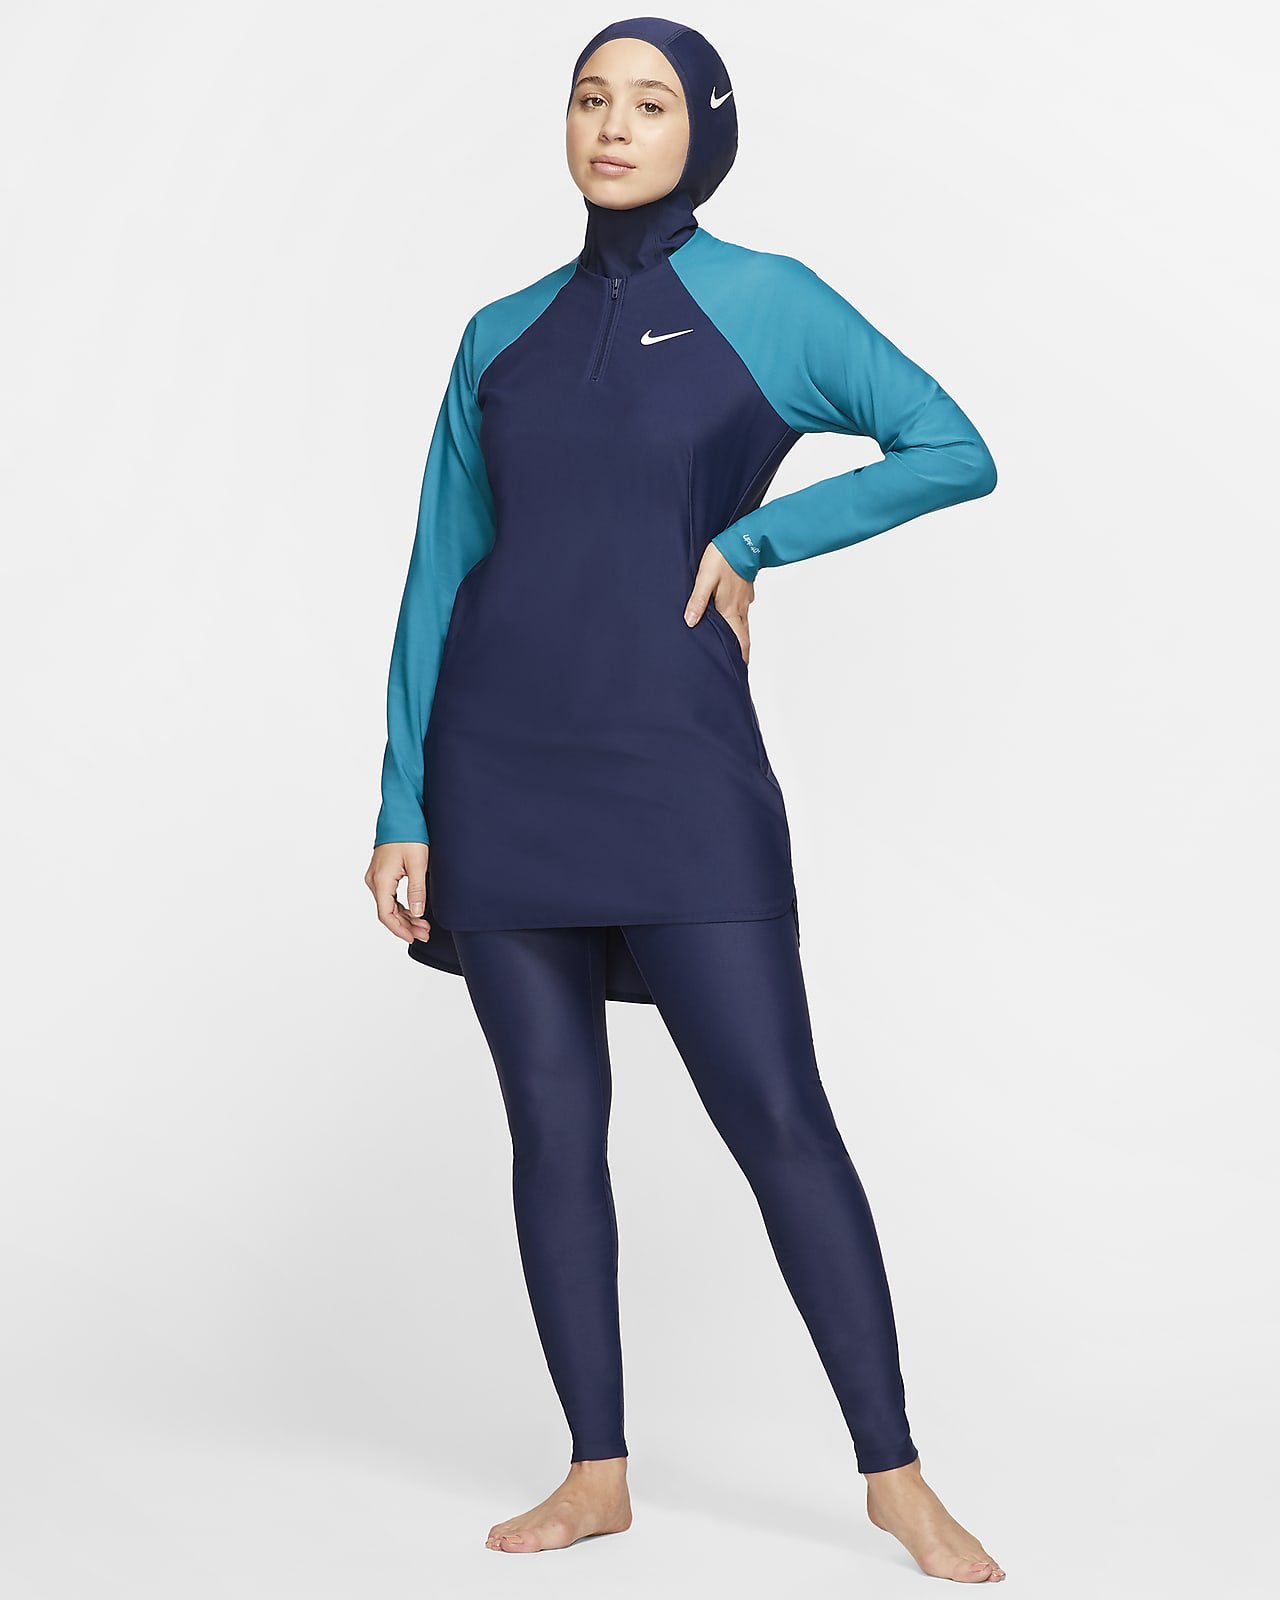 compensar Siesta Residencia Nike Victory Leggings de natación de protección completa ceñidos - Mujer.  Nike ES